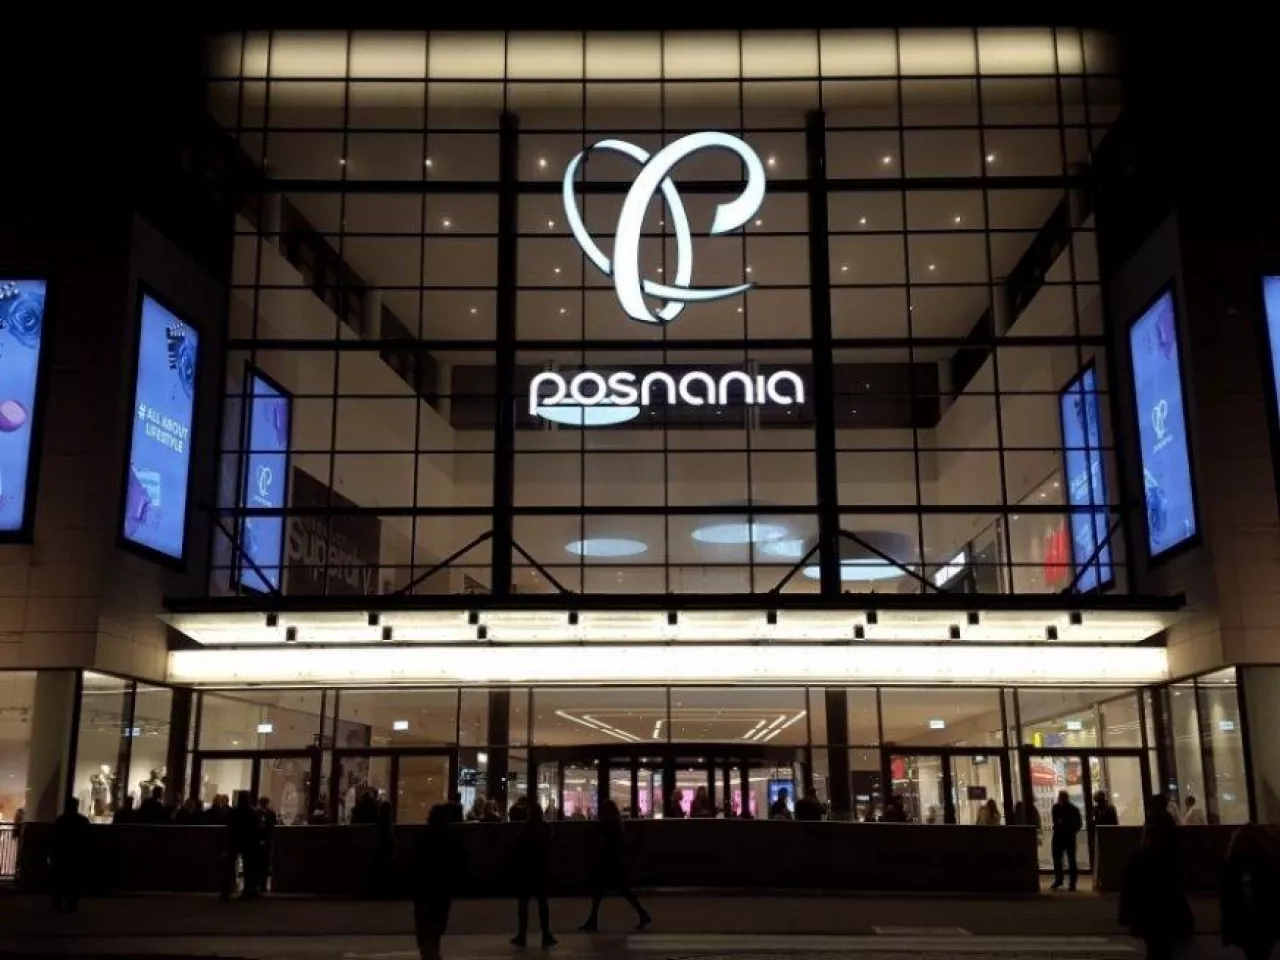 Centrum handlowe Posnania w noc otwarcia (fot. wiadomoscihandlowe.pl)